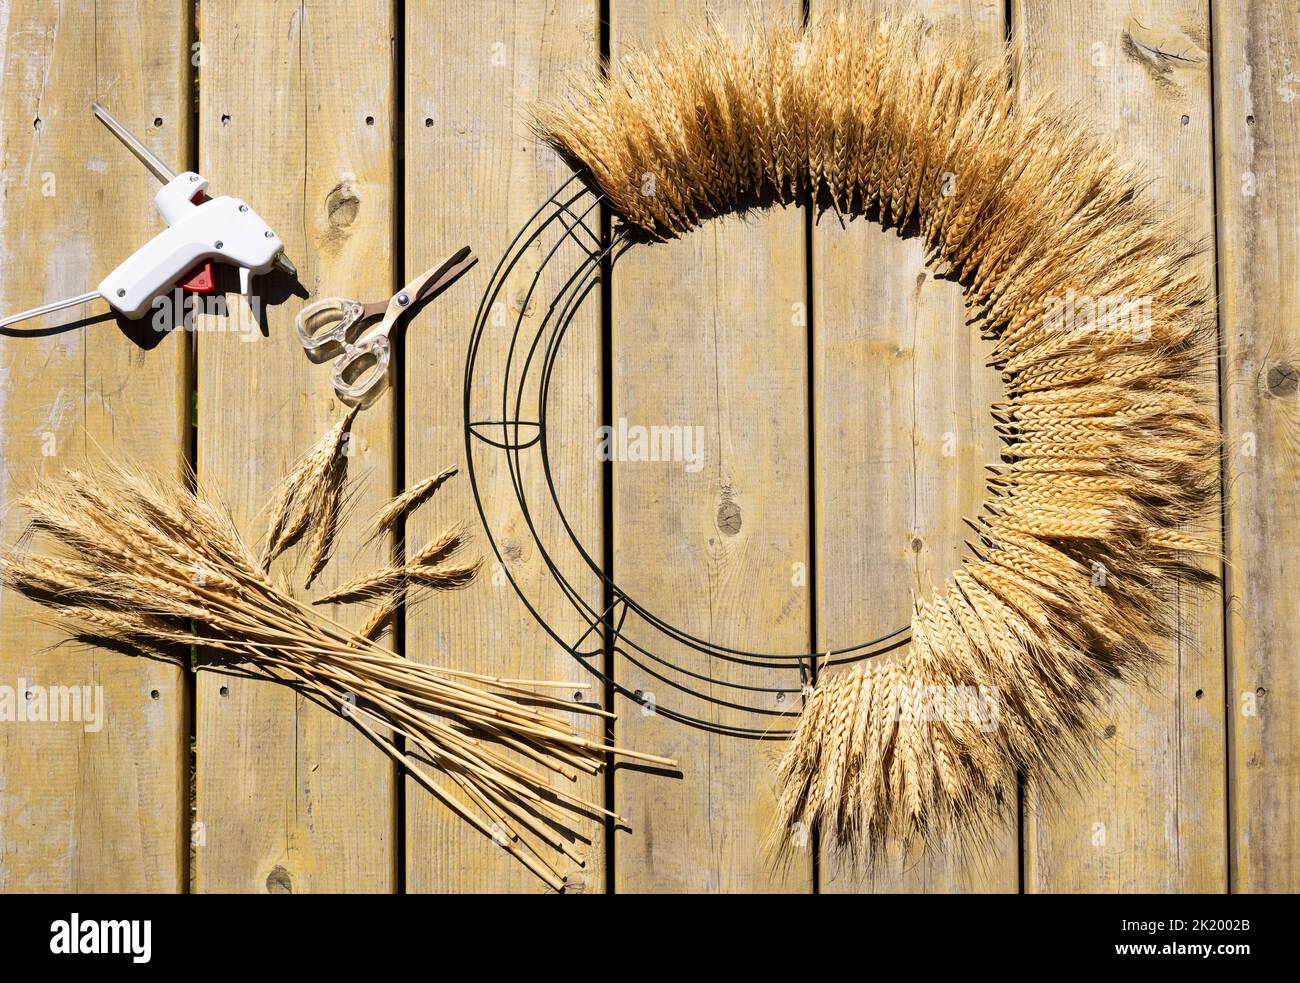 Corona de puerta de trigo con pegamento caliente y tijeras Foto de stock